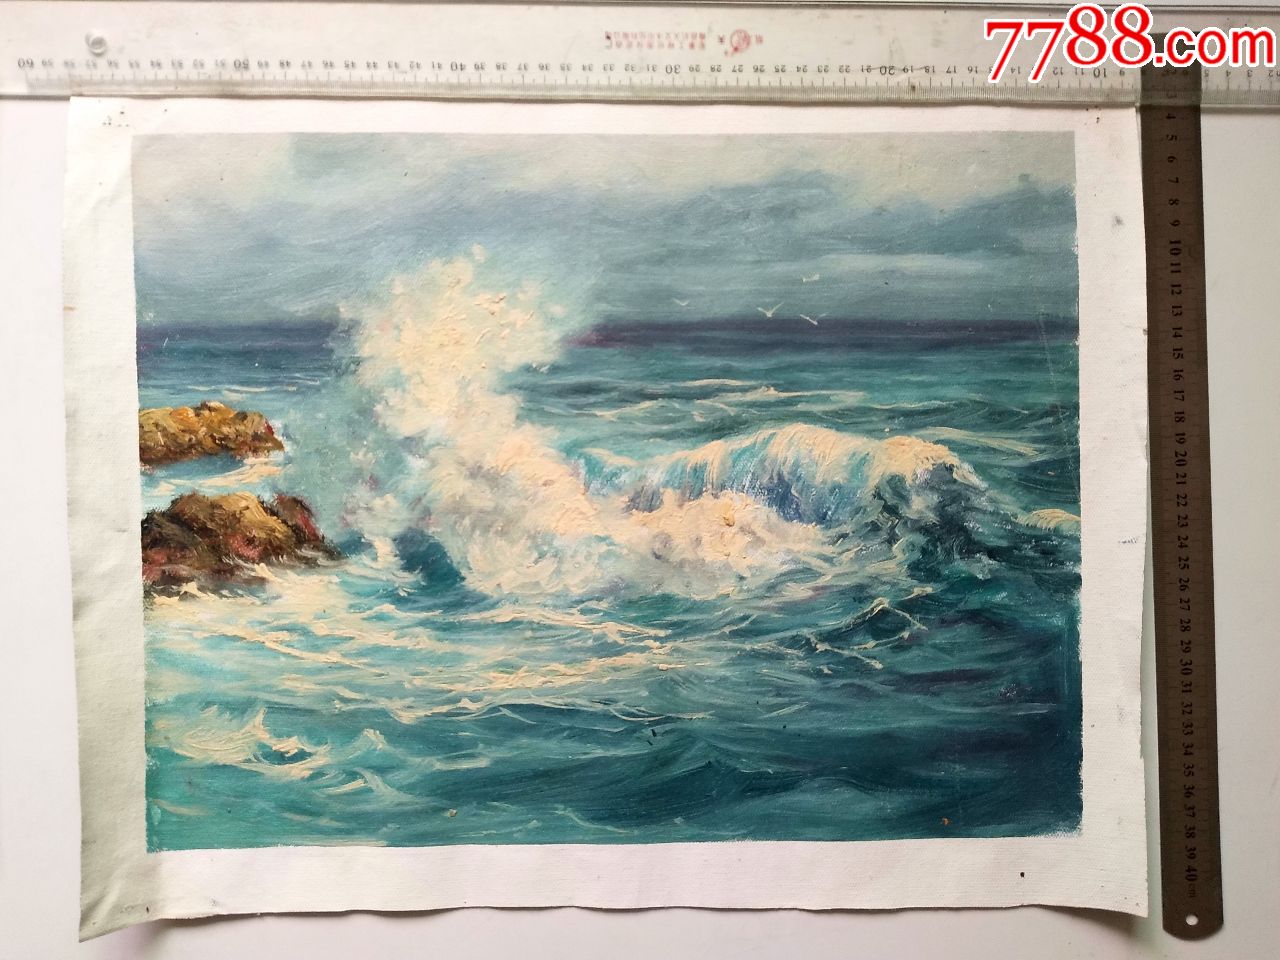 精美的手绘布面油画《海浪》